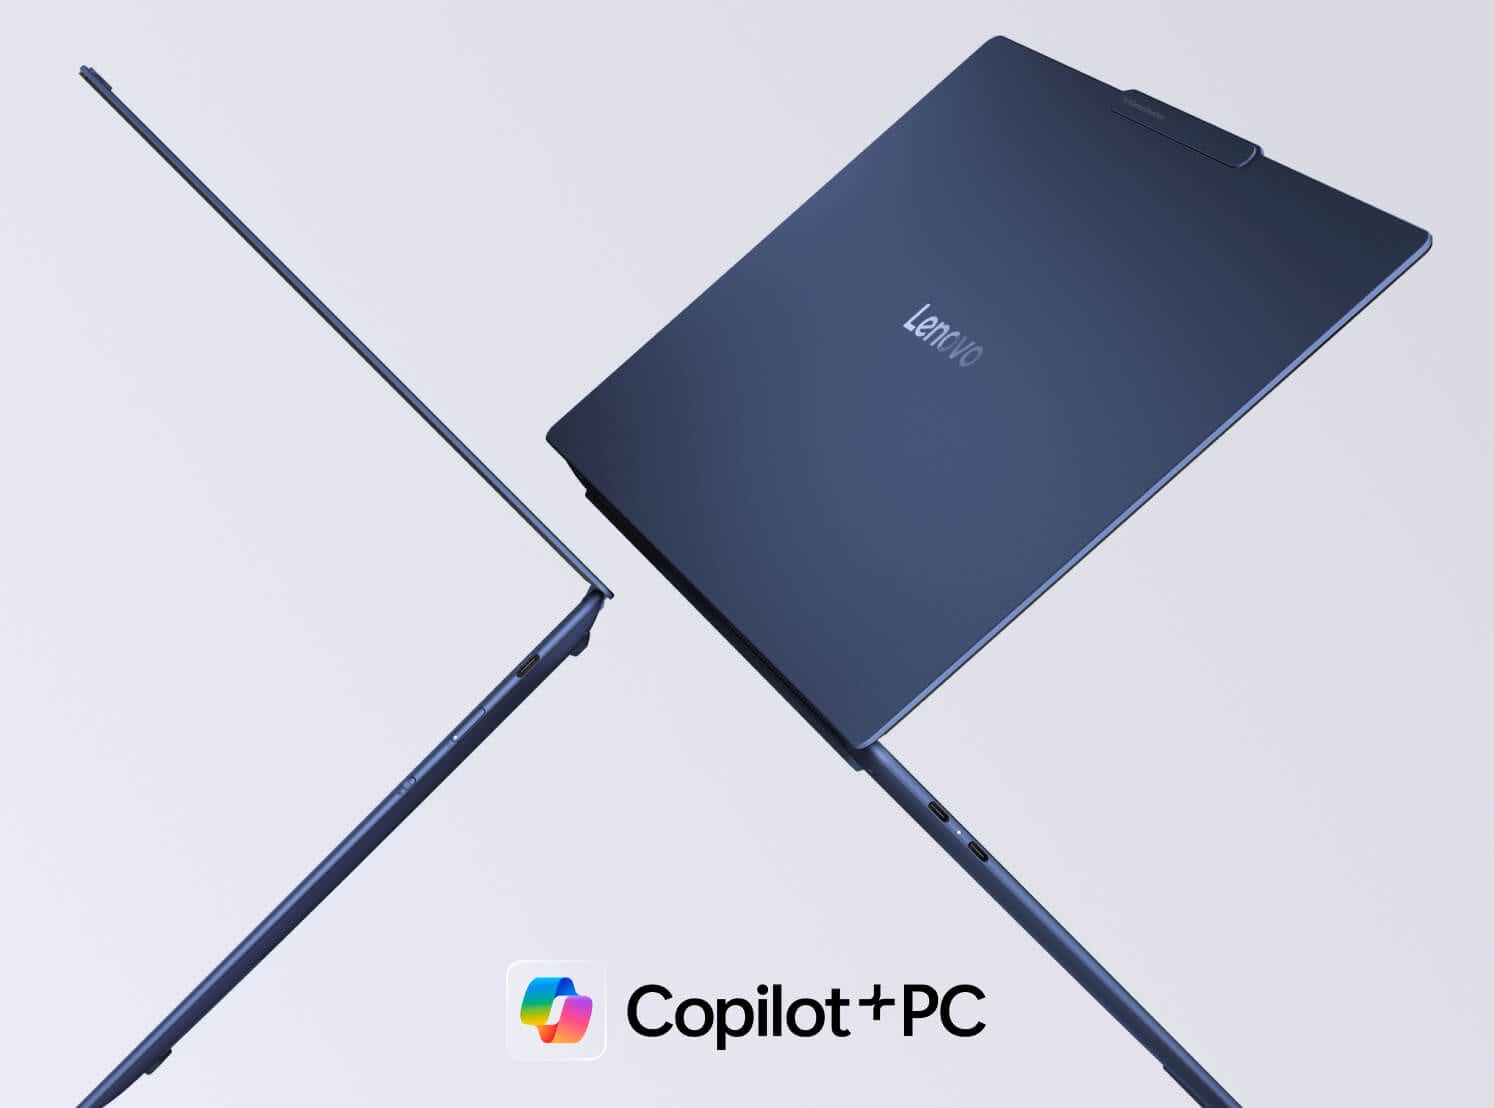 兩部 Lenovo Yoga 筆記簿型電腦背對背浮在半空中，顯示 Copilot+PC 標誌